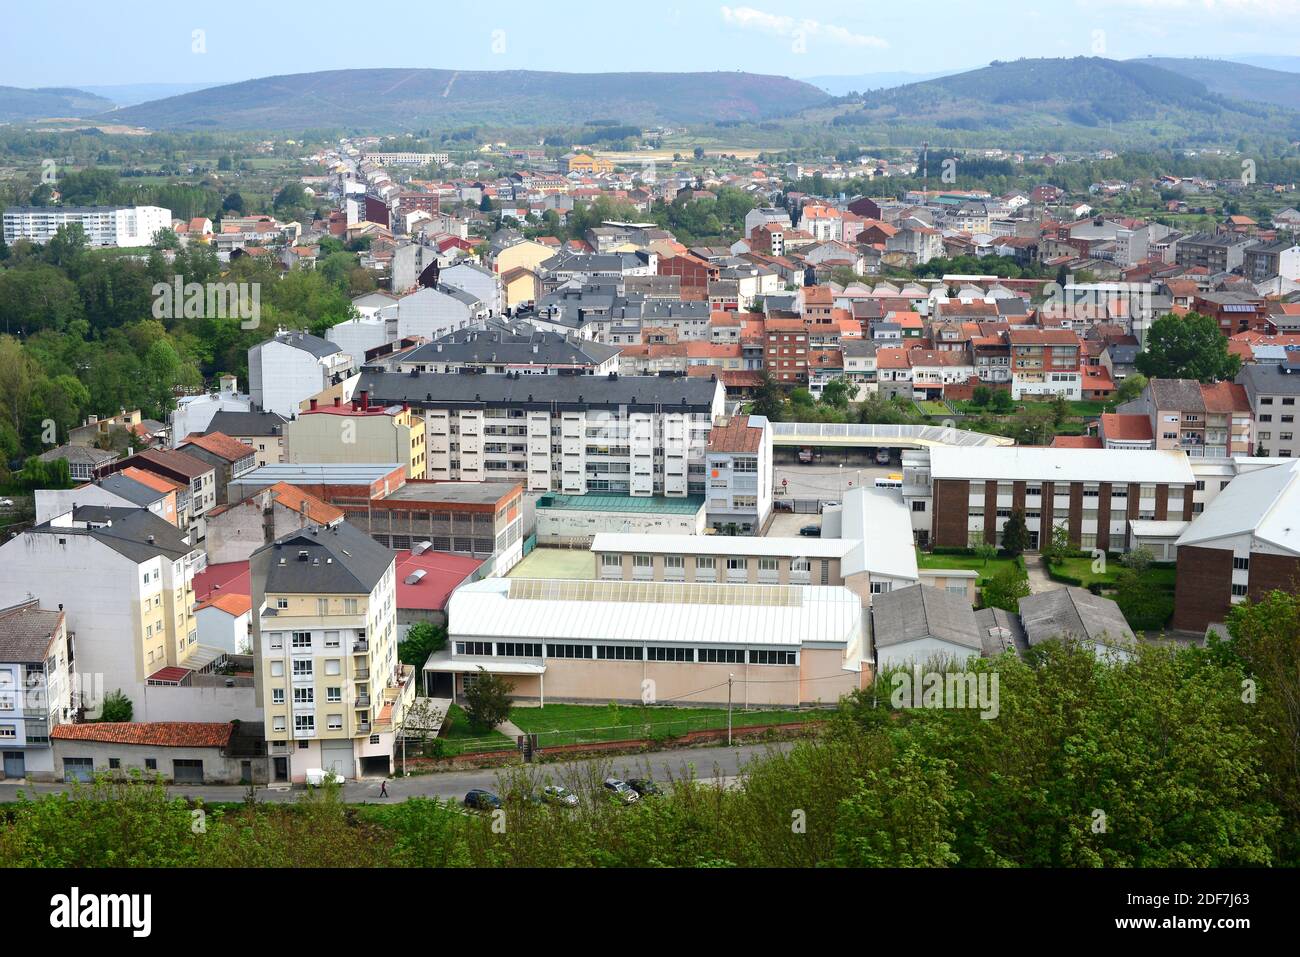 Monforte de Lemos. Lugo province, Galicia, Spain. Stock Photo